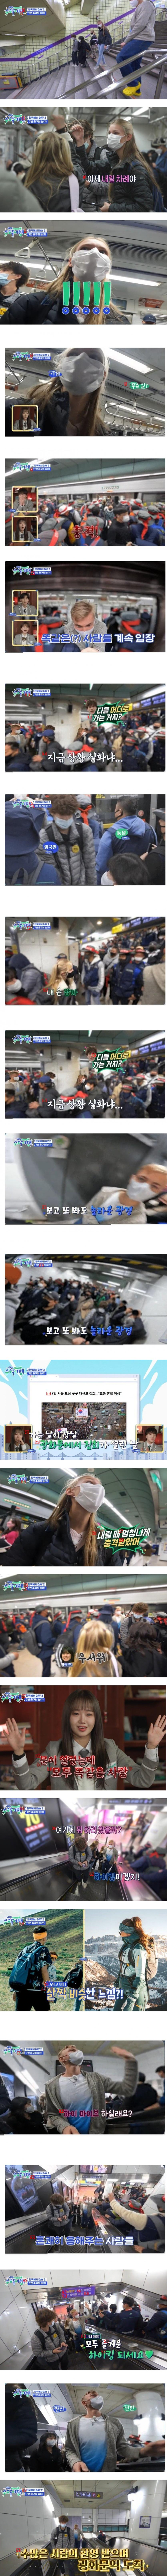 韓国の地下鉄に乗って赤い部隊を見て驚いた外国人たち